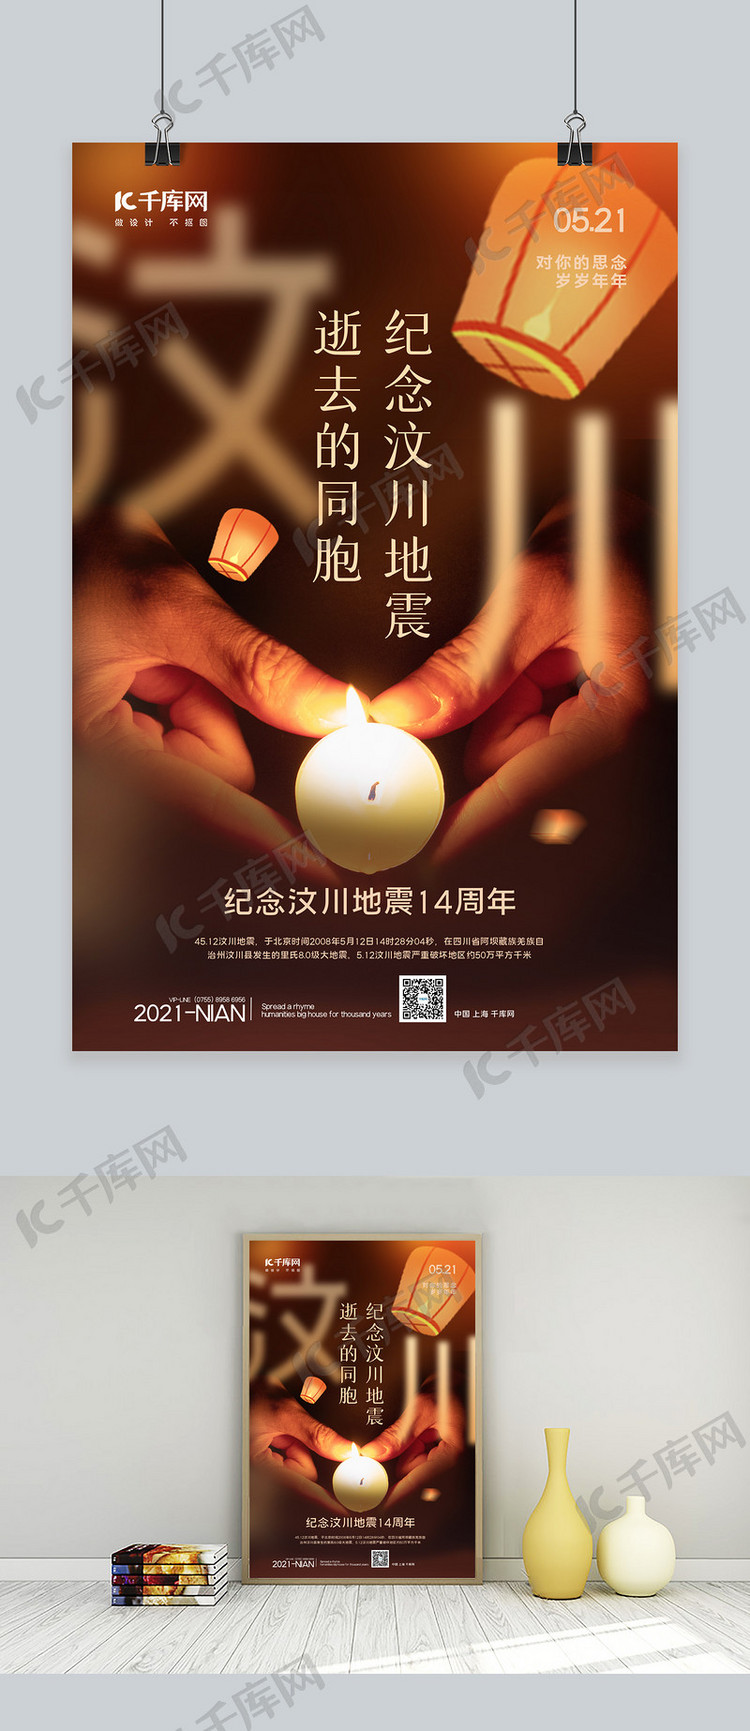 汶川地震周年祭手捧蜡烛黄色简约海报